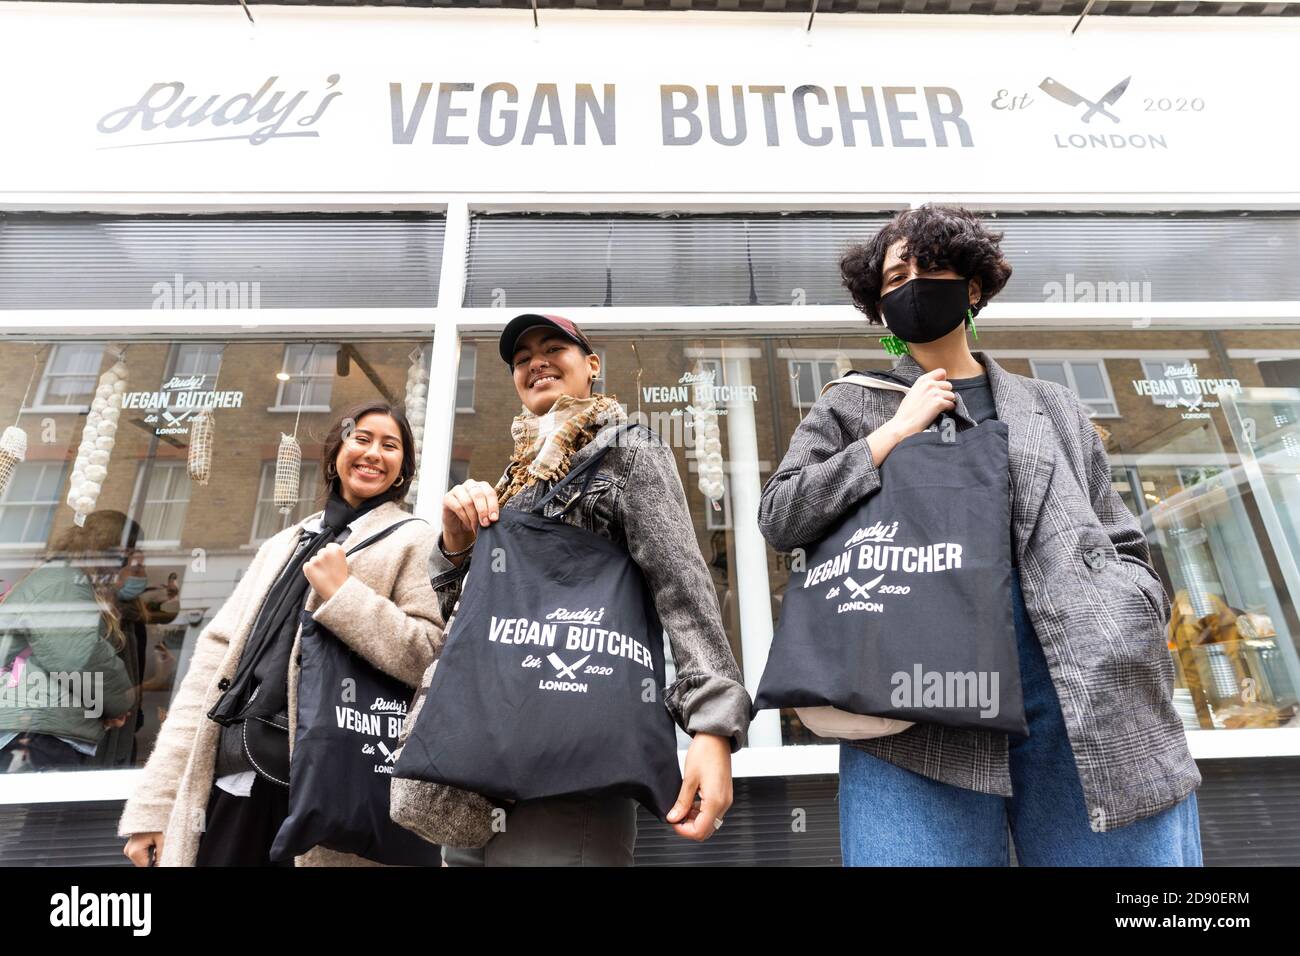 Rudys Vegan Butcher Delikatessen eröffnet in Islington London mit einem Ausverkaufstag. Eine Stunde vorher bildeten sich Warteschlangen, bis alle Produkte ausverkauft waren. Stockfoto